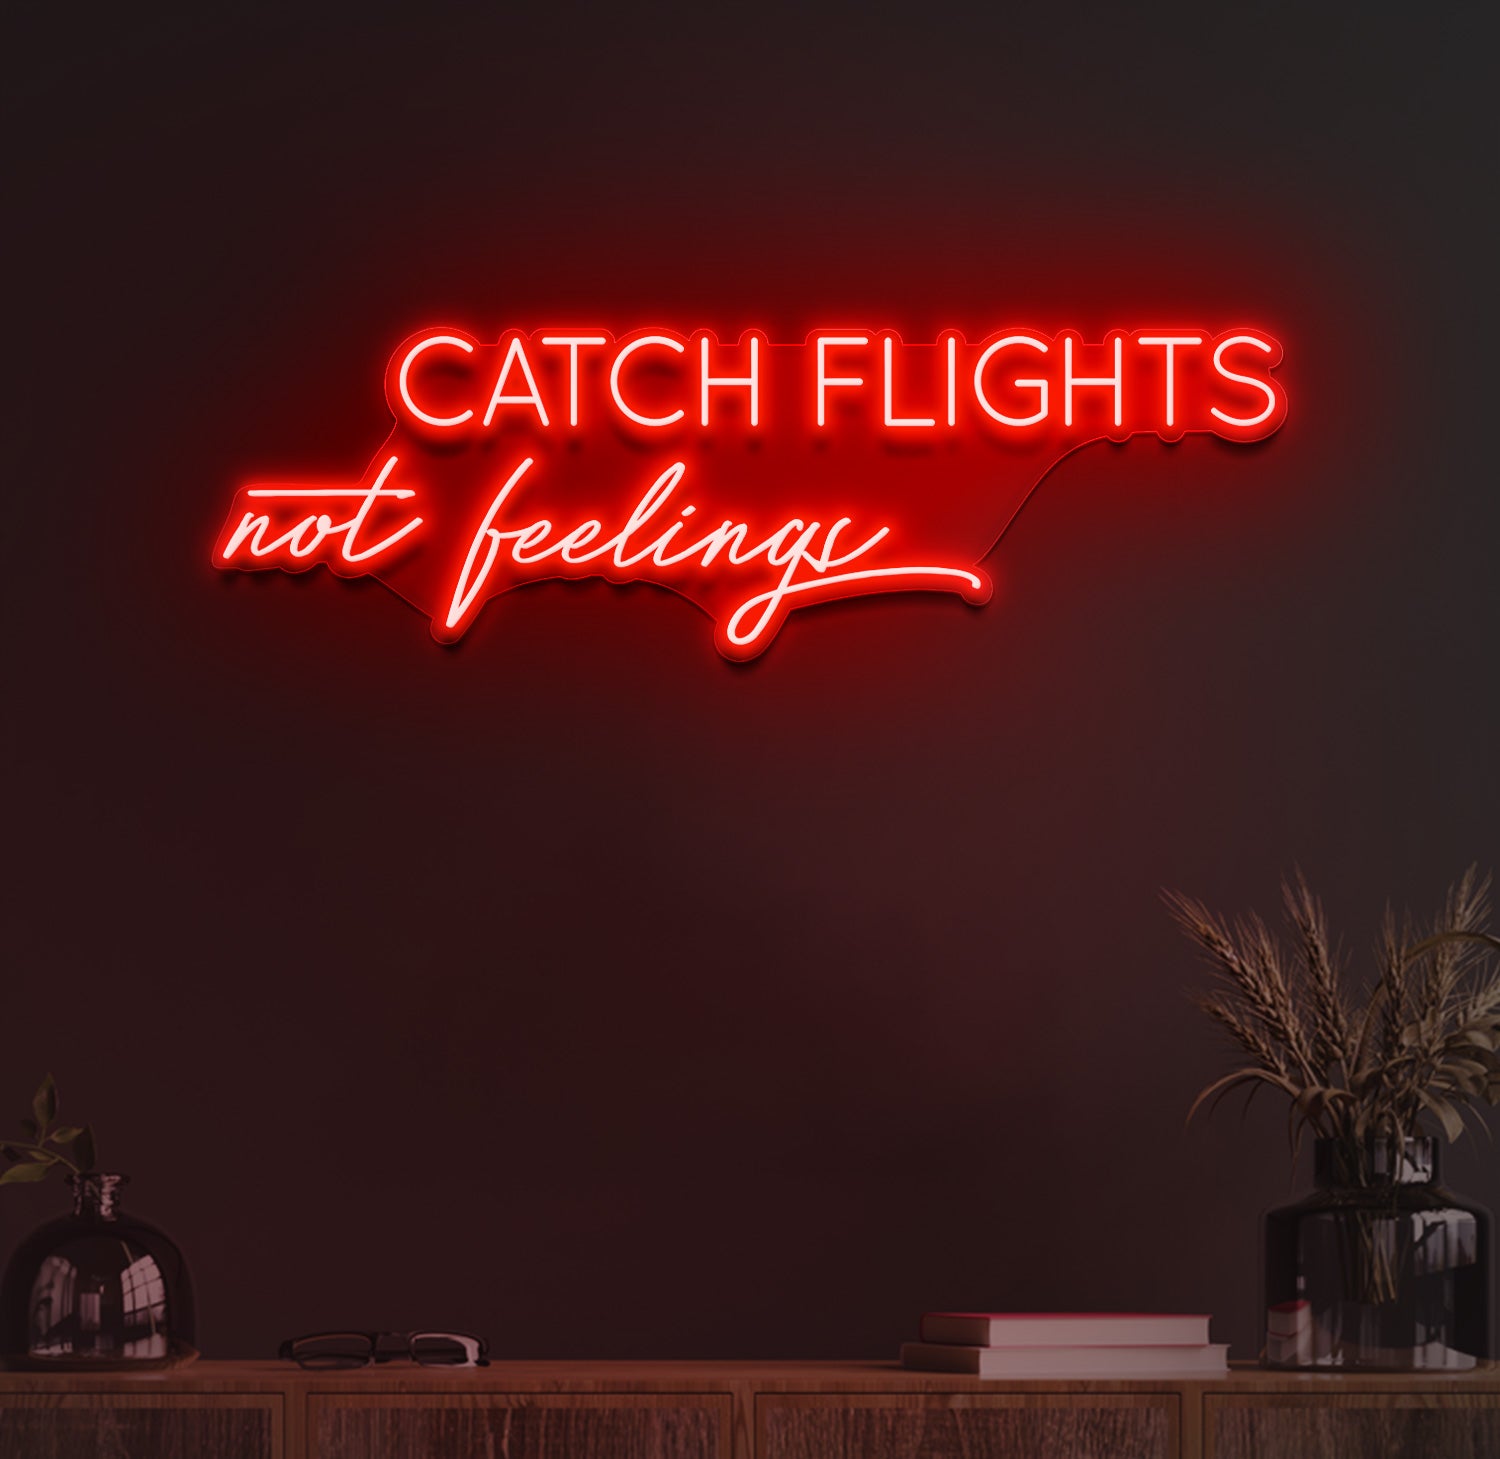 Catch flights not feelings neon sign